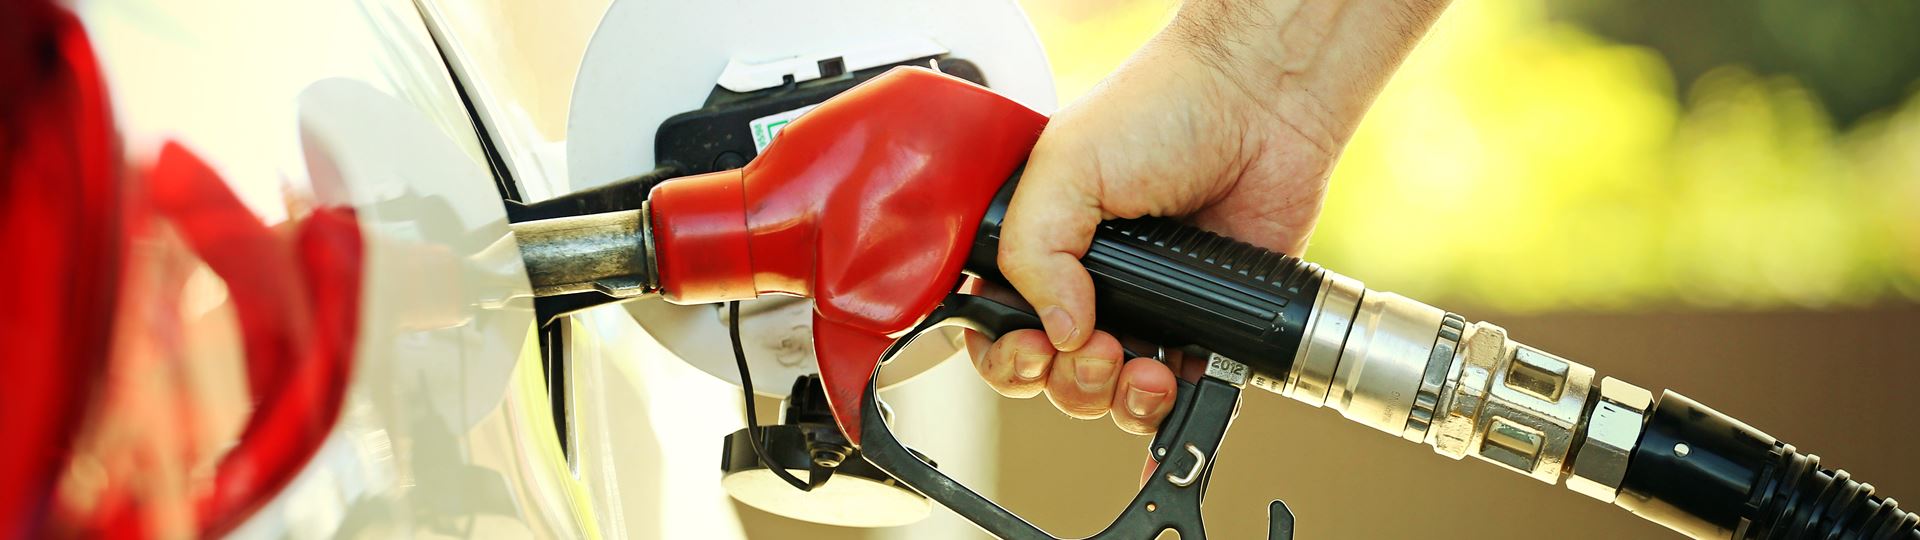 Ceny pohonných hmot se blíží ročním maximům